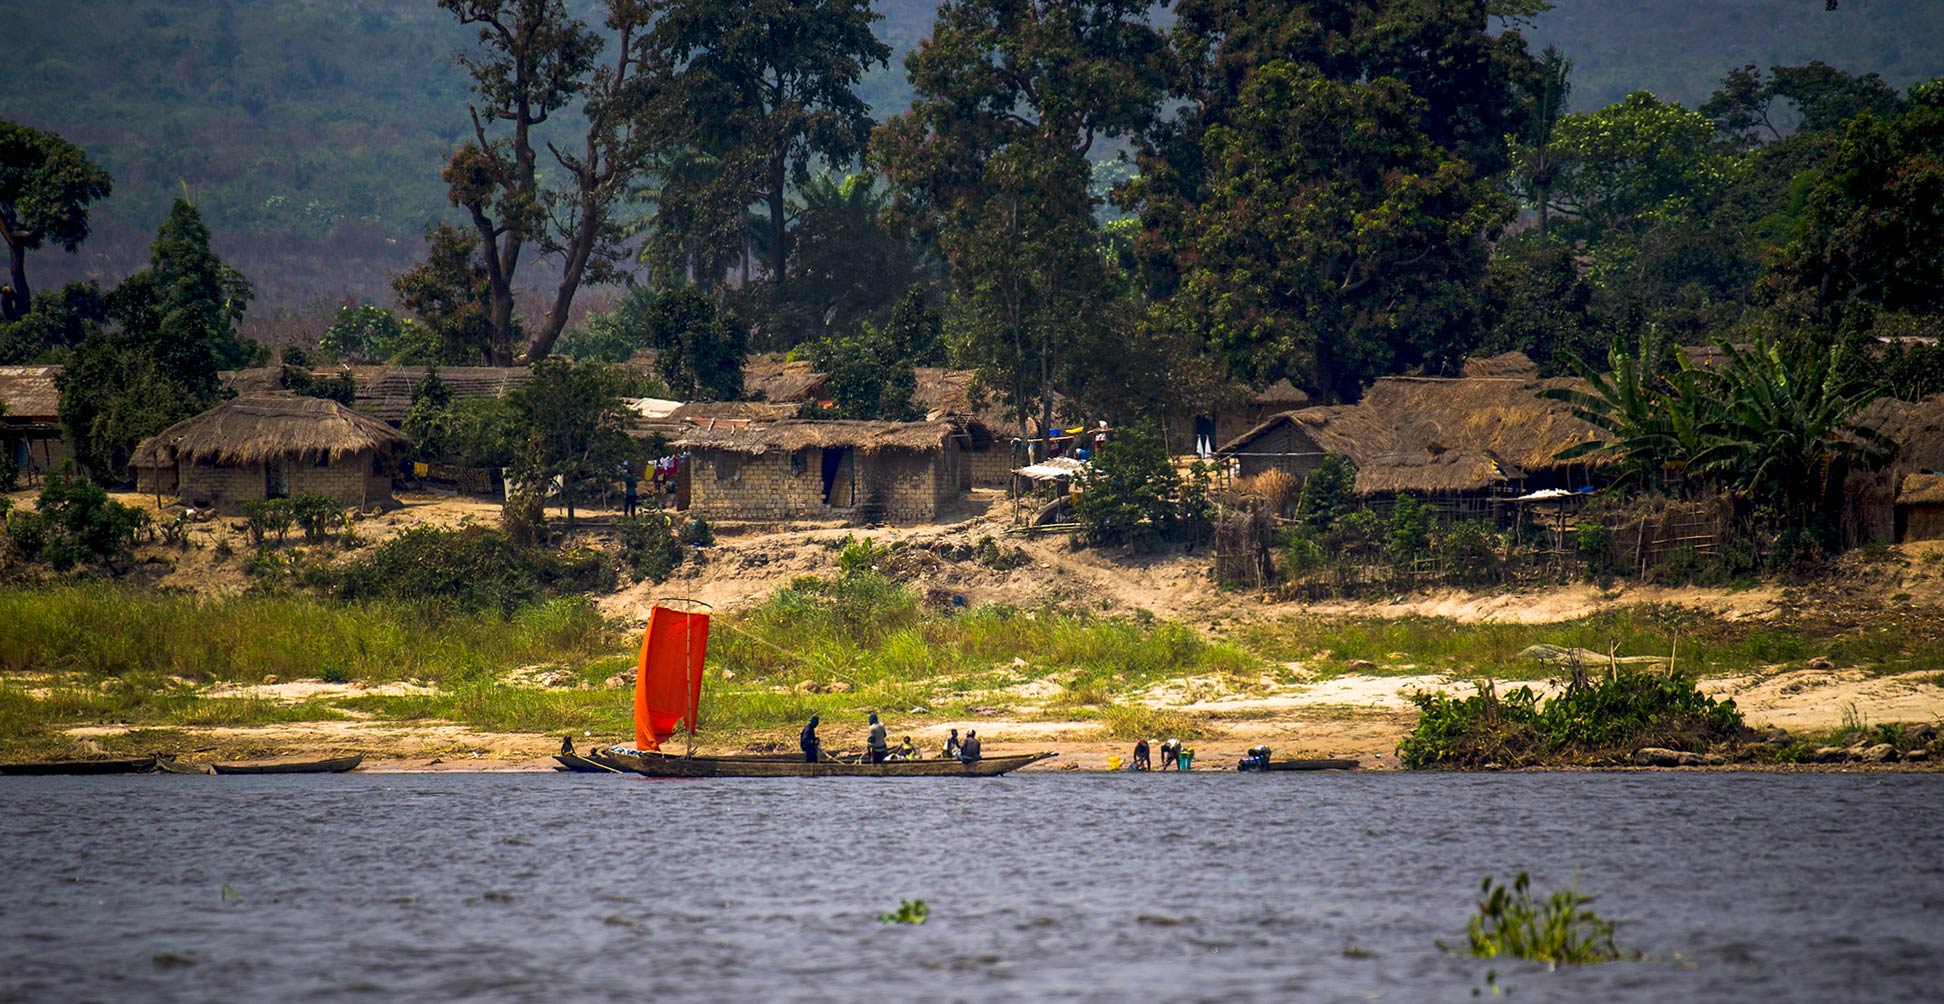 Village at the Congo River between Kinshasa and Lukolela